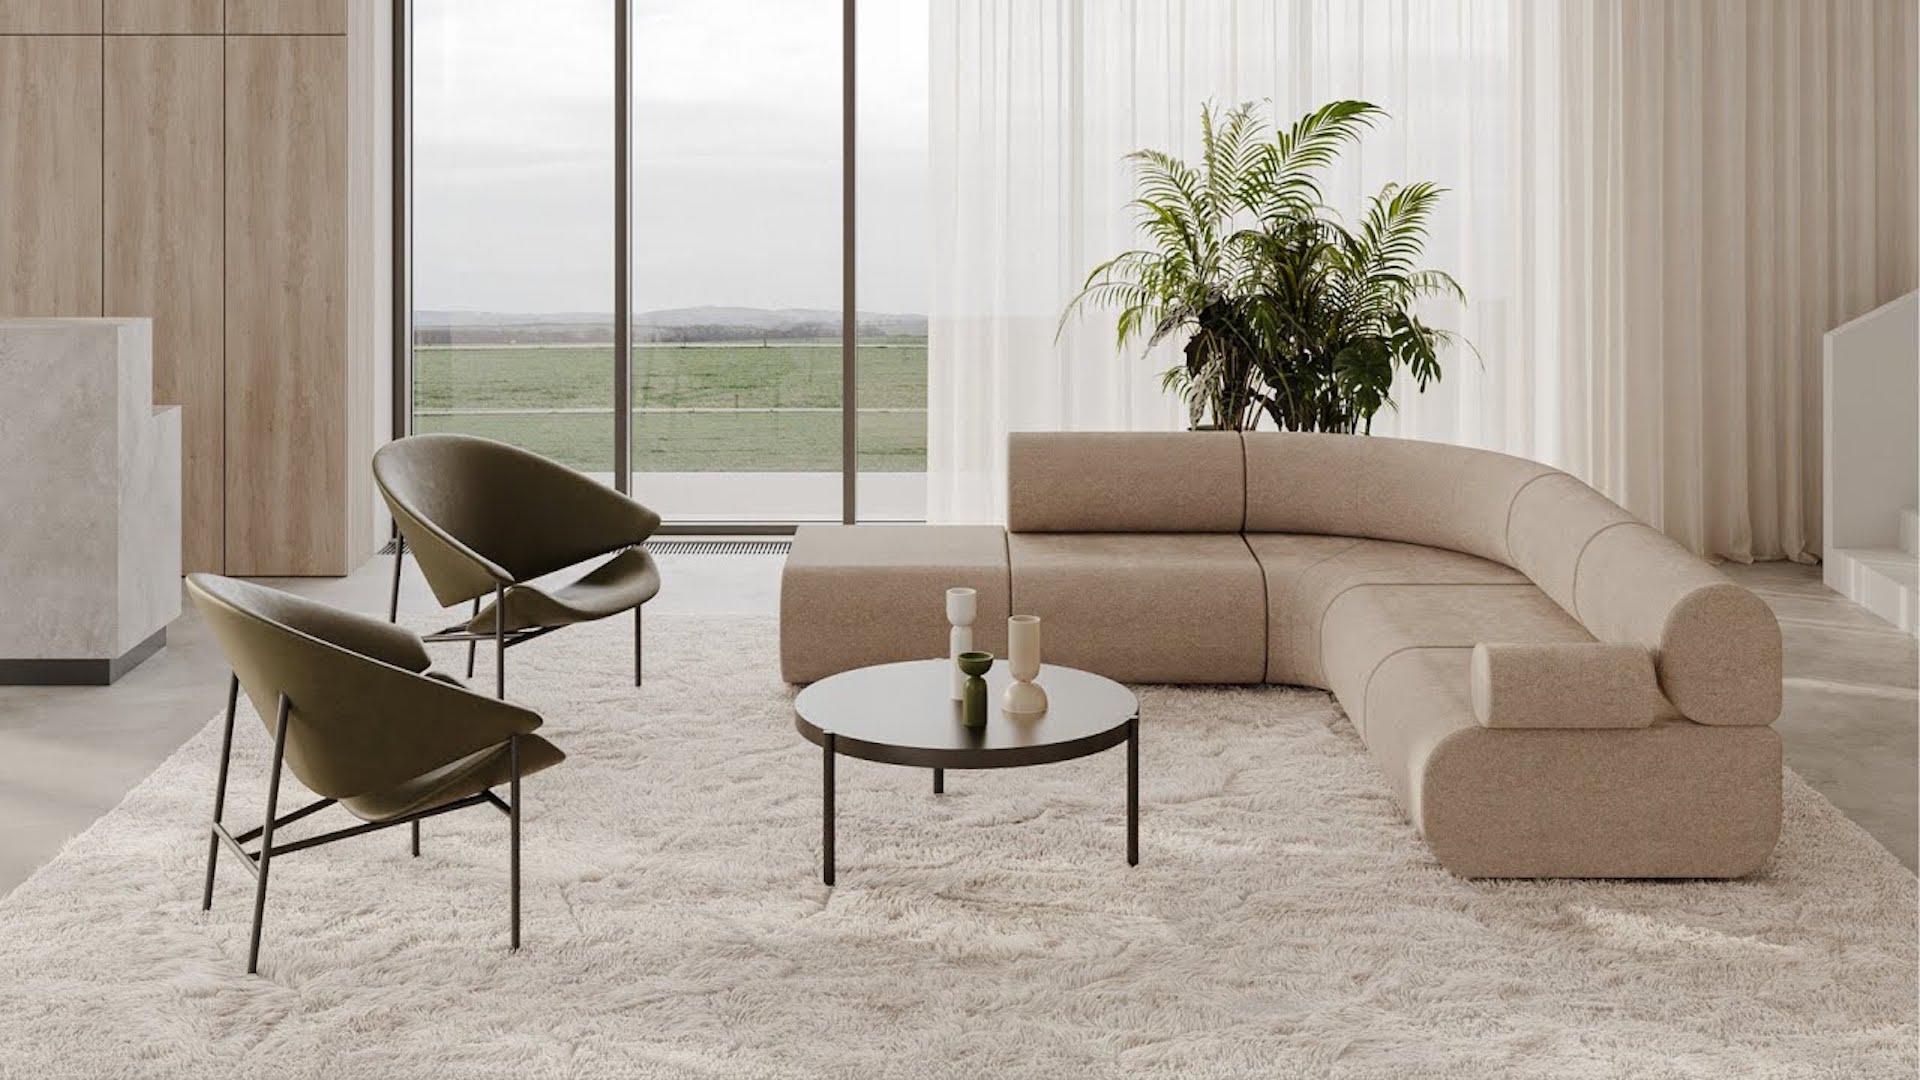 Track ist ein modulares Sofakonzept mit einem ikonischen und skulpturalen Ansatz. Die schwebenden felsenähnlichen Formationen bilden eine komfortable Landschaft aus kleinen Sitzinseln, die in jedem Interieur zum Mittelpunkt werden. Eine solide